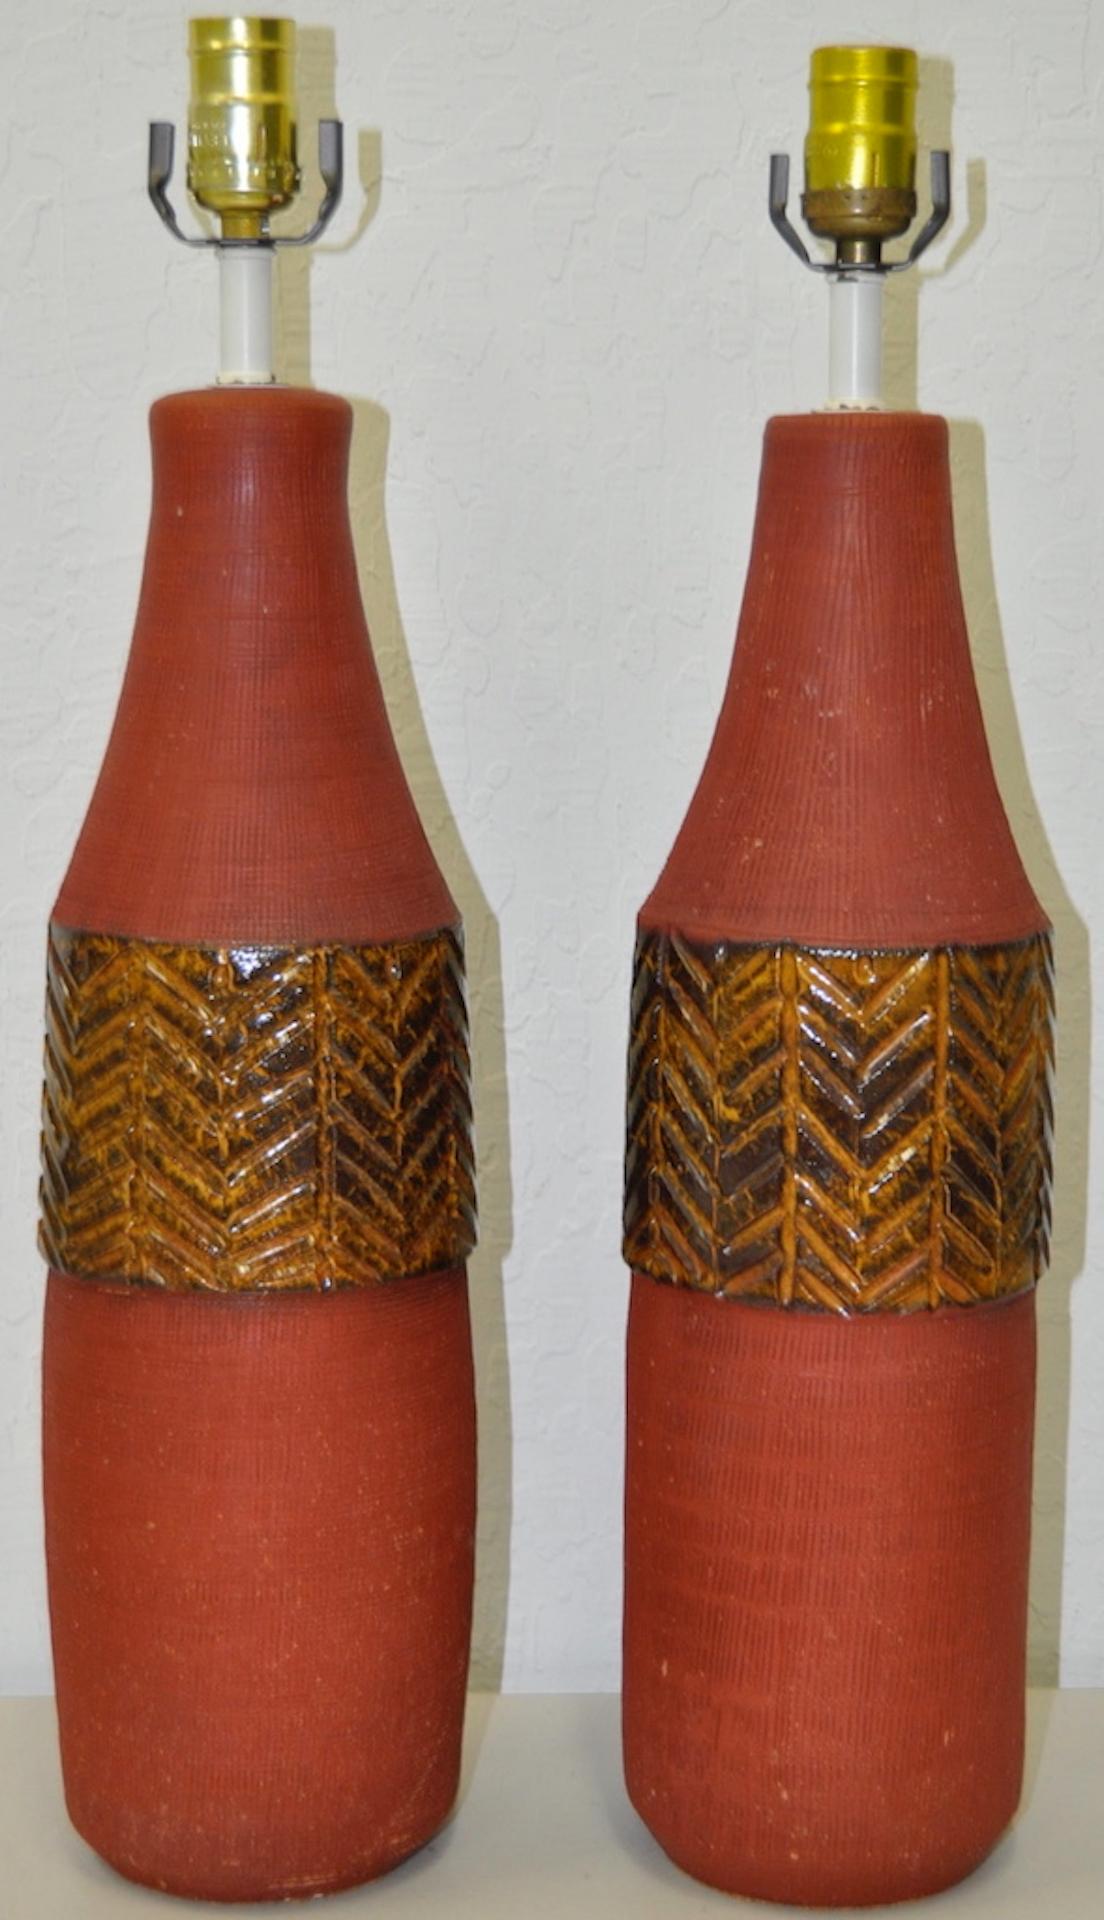 Ein Paar italienische Raymor-Keramik-Tischlampen aus den 1950er Jahren.

Absolut atemberaubendes Paar glasierter Keramik-Tischlampen aus Italien.

Abmessungen 5 